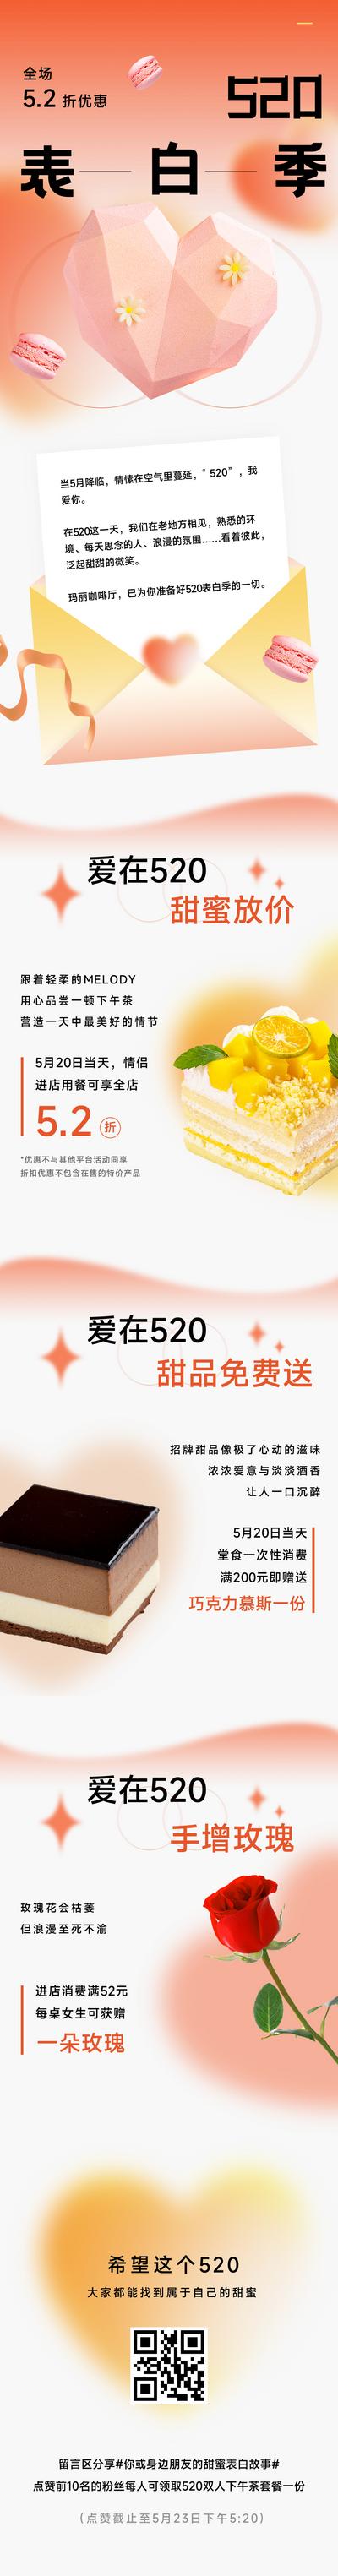 南门网 广告 海报 节日 情人节 520 长图 美食 促销 创意 表白季 推文